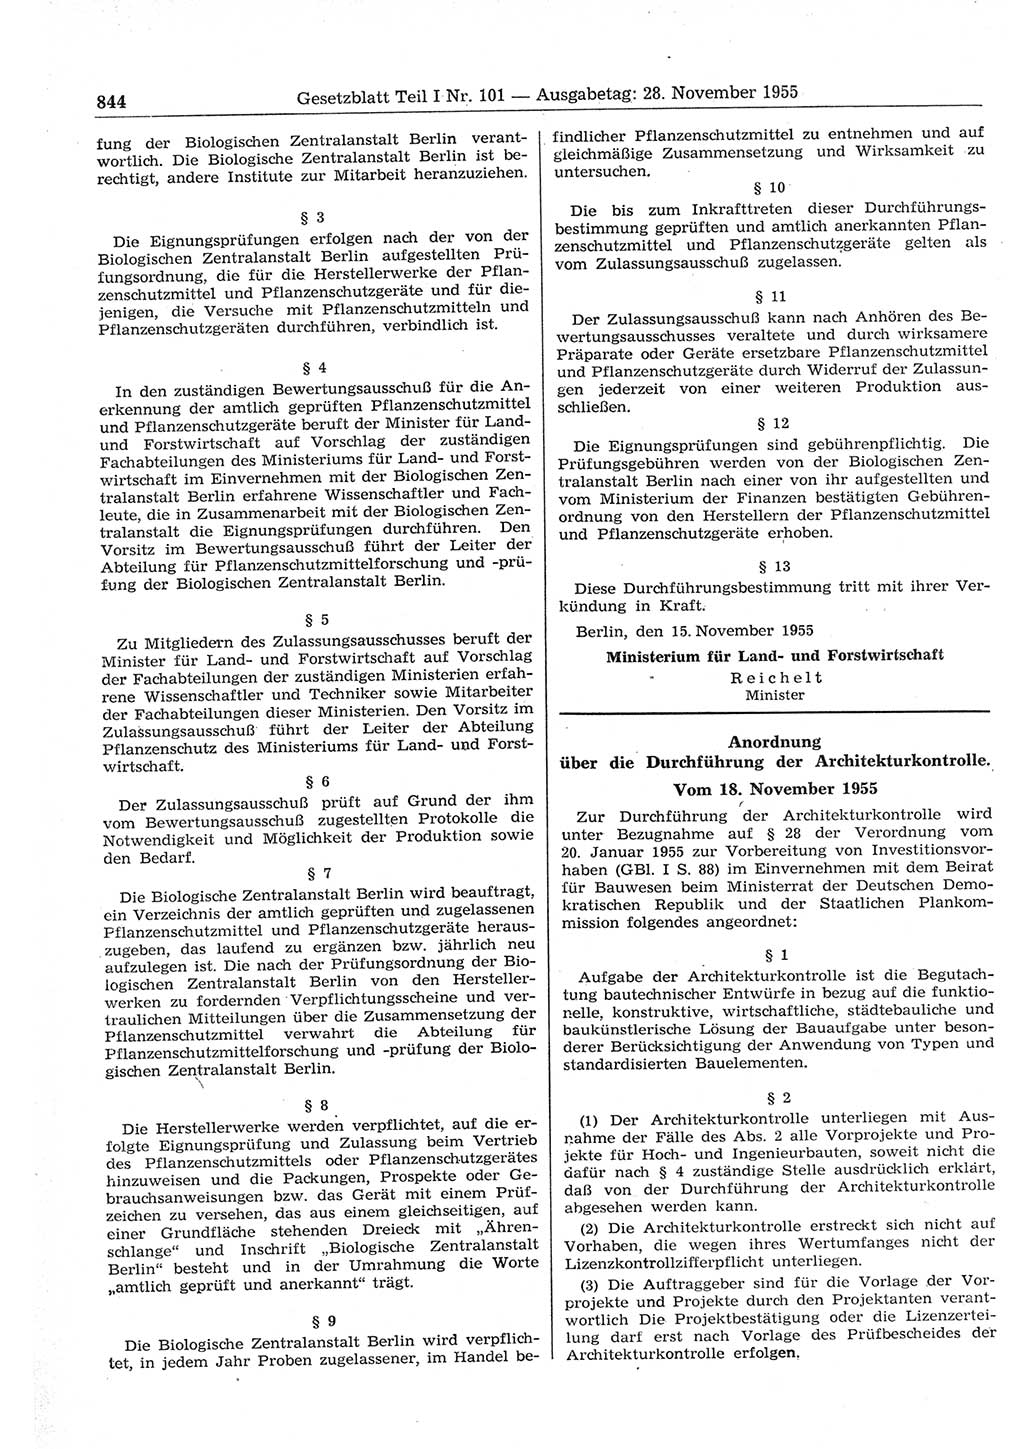 Gesetzblatt (GBl.) der Deutschen Demokratischen Republik (DDR) Teil Ⅰ 1955, Seite 844 (GBl. DDR Ⅰ 1955, S. 844)